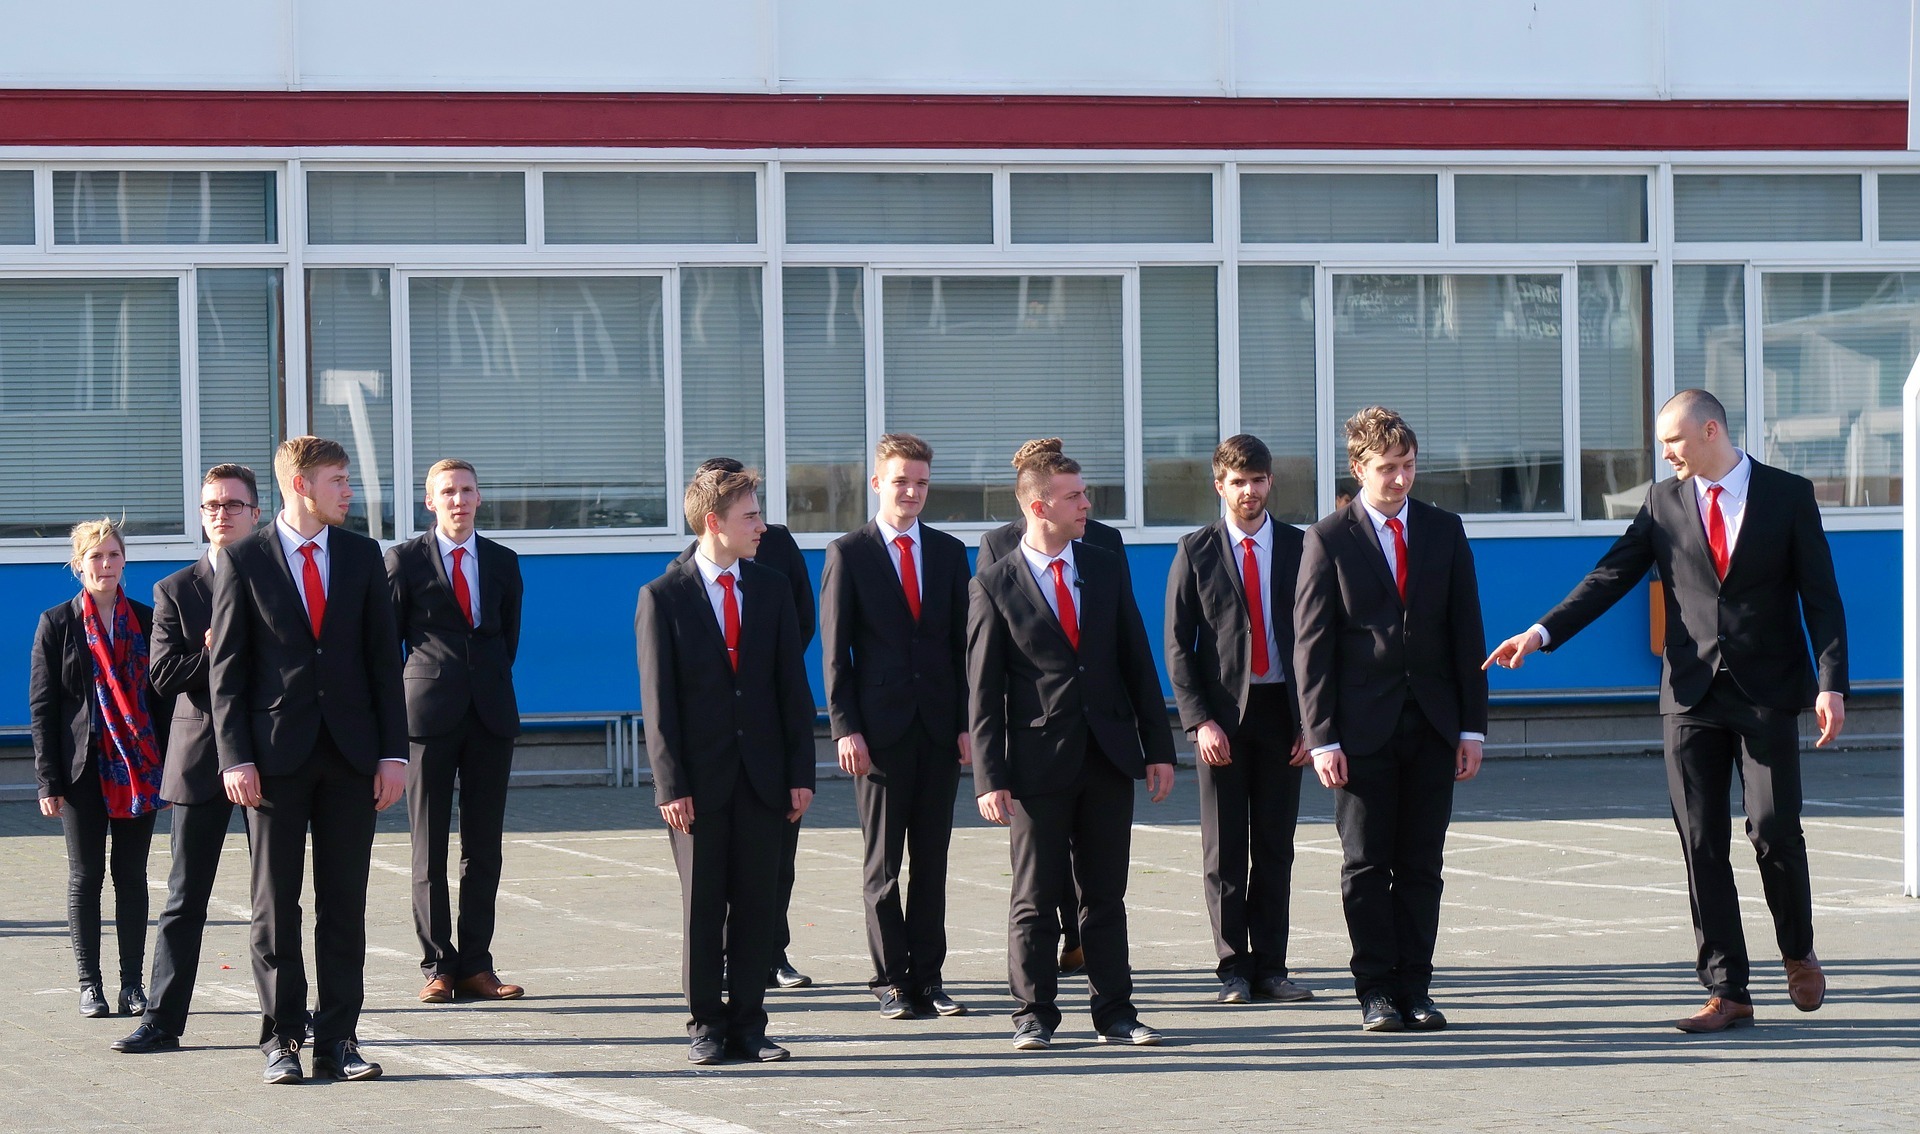 Die rote Krawatte - ein Stilelement auf men-styling.de